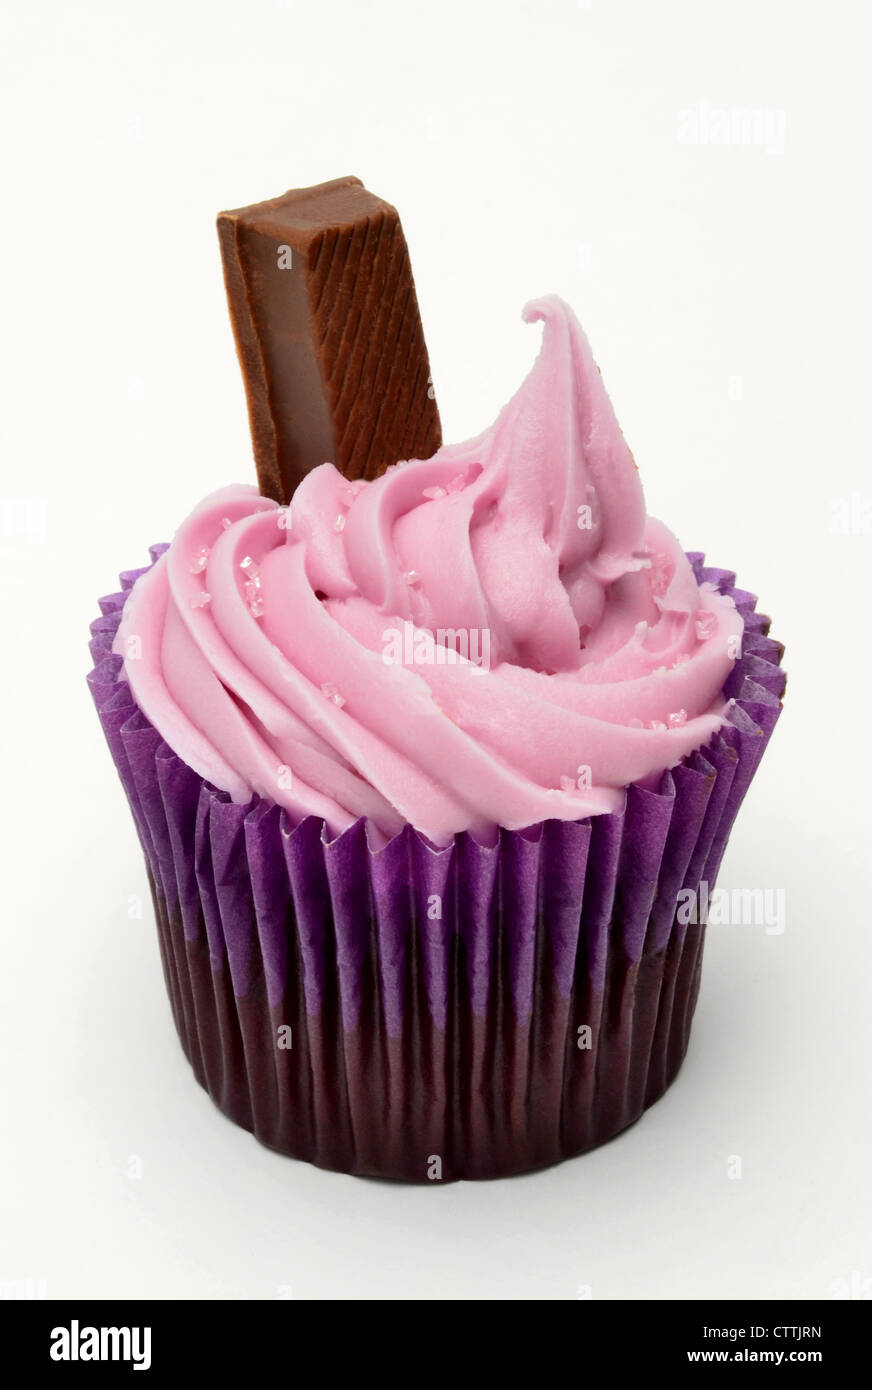 Cupcake con glaseado rosa y chocolate dedo contra un fondo blanco. Foto de stock